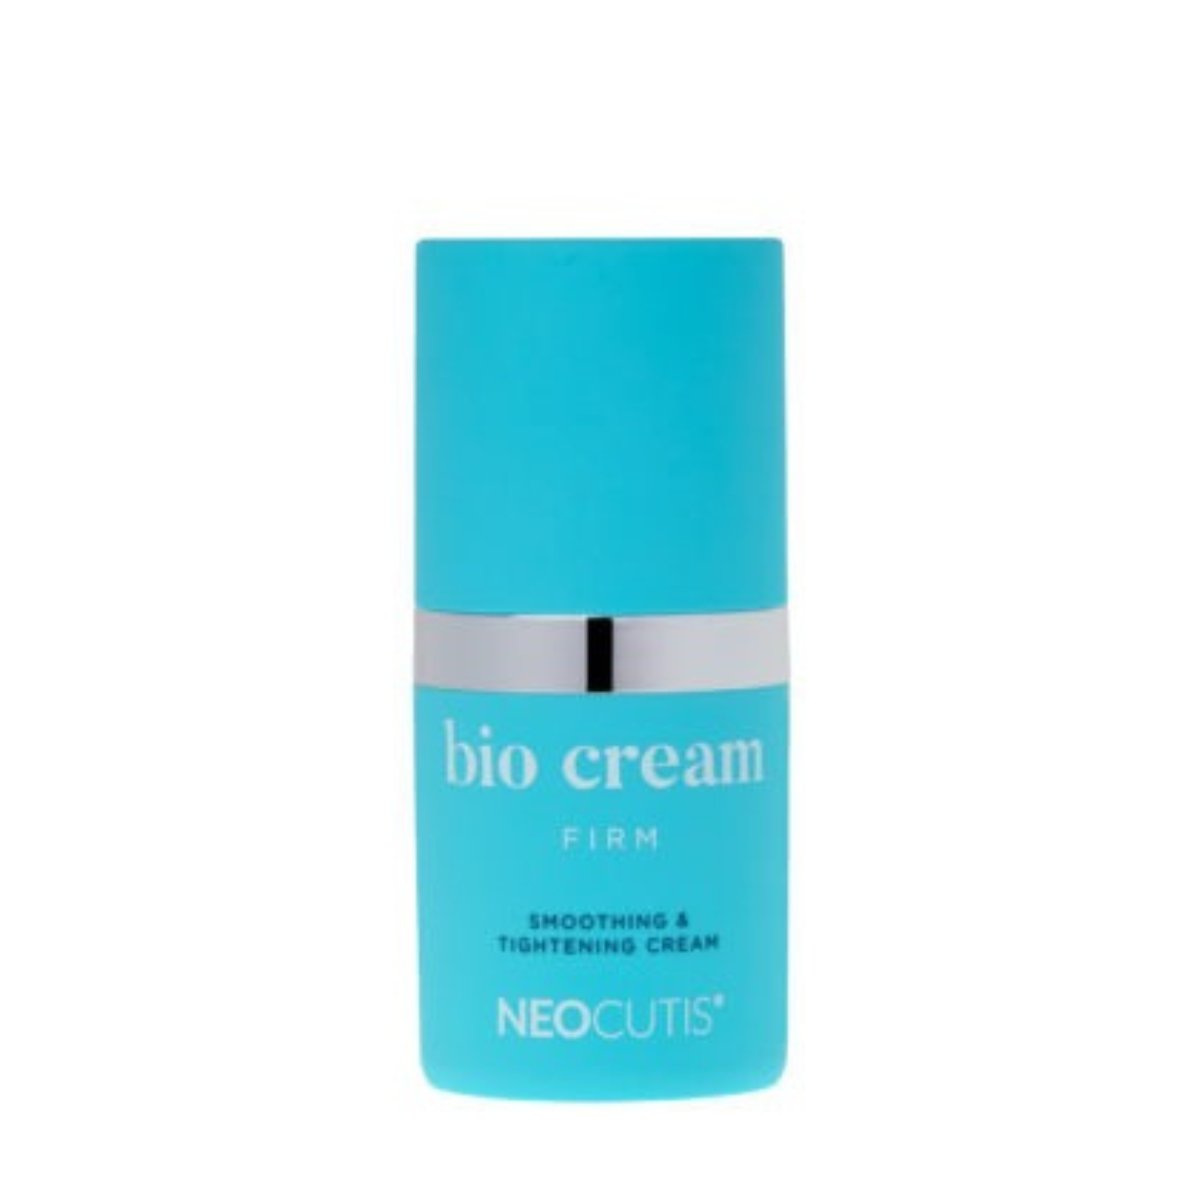 Neocutis BIO CREAM FIRM - Smoothing & Tightening Cream - SkincareEssentials